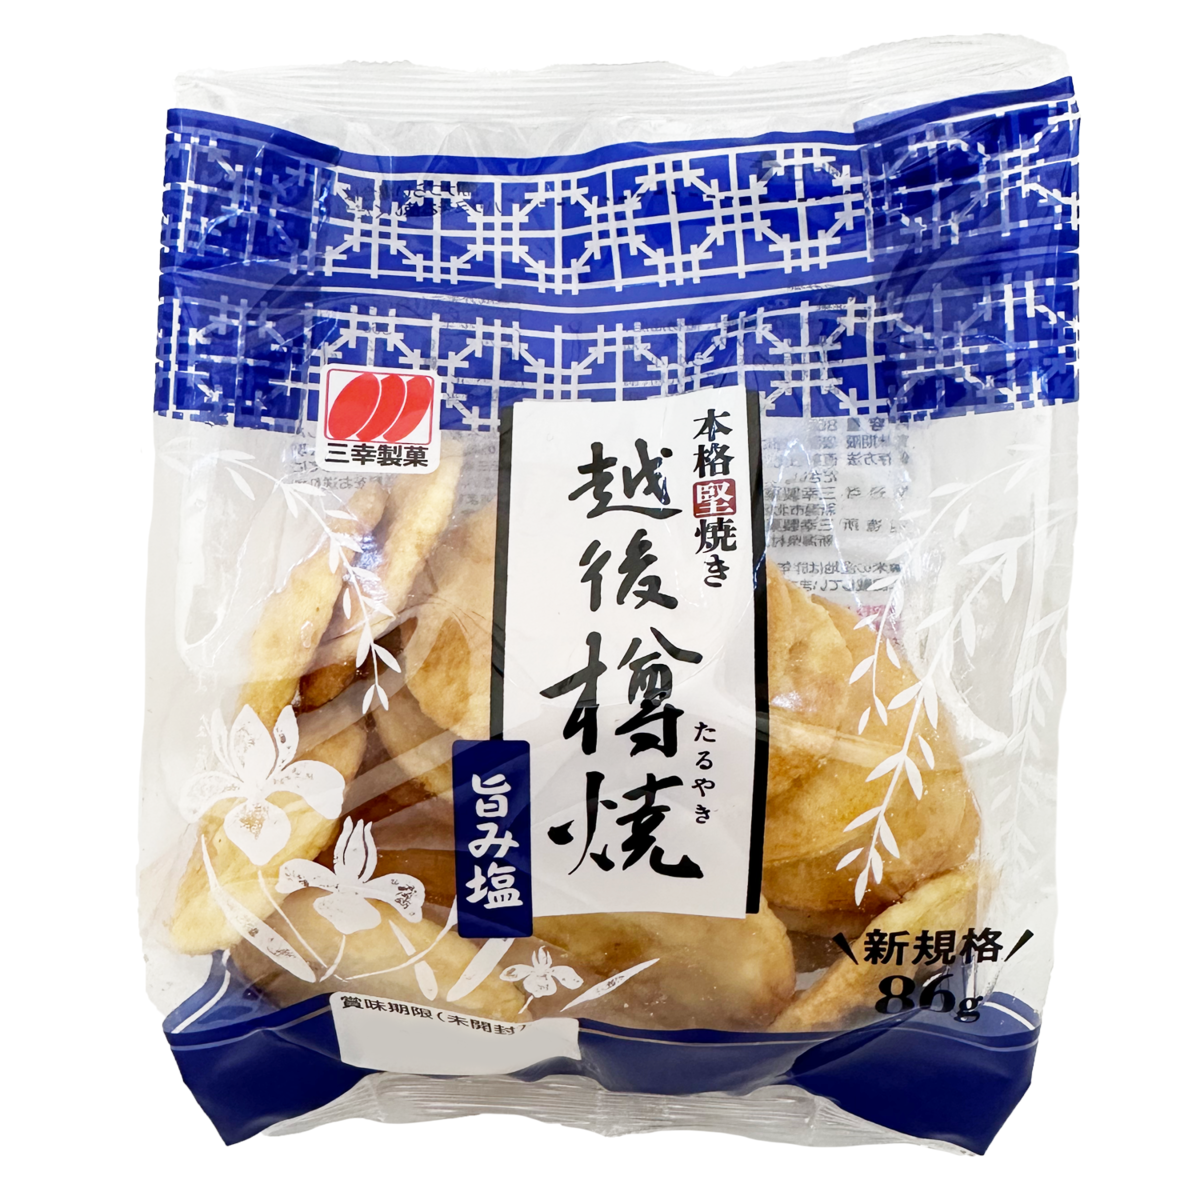 Sanko Seika Echigo Taruyaki Umami Shio 三幸制菓 米饼 86g